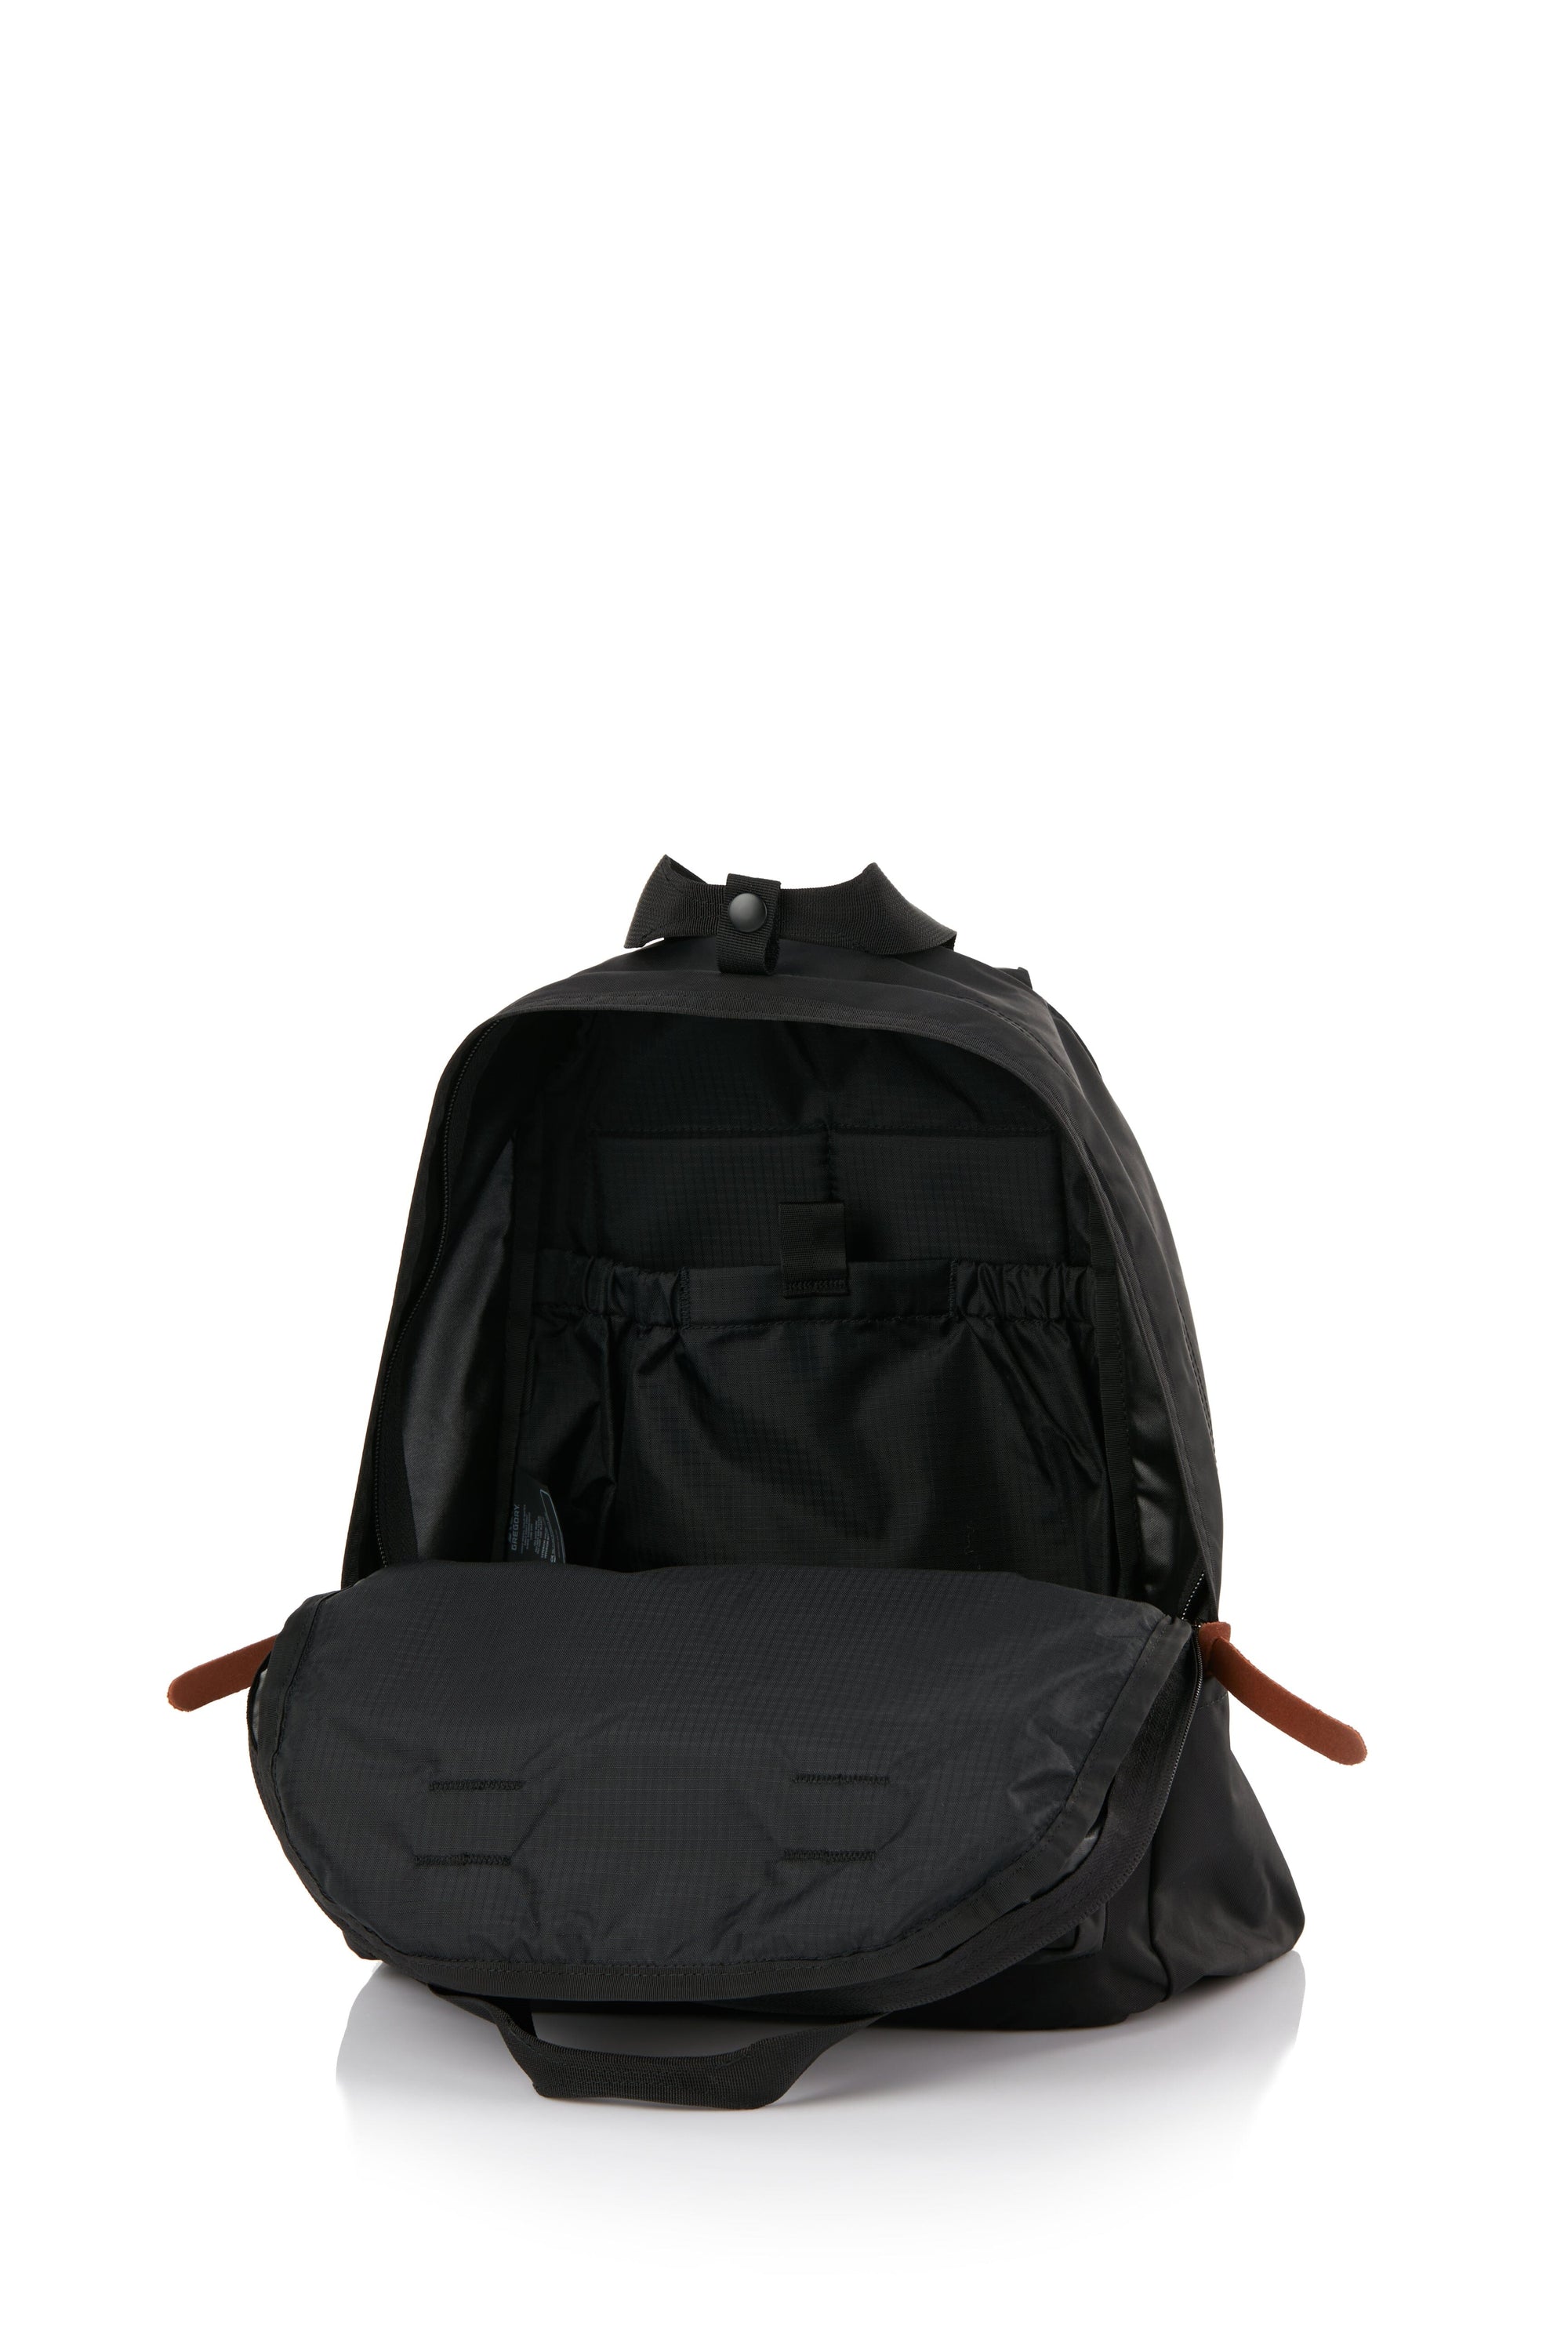 Gregory Twin Pocket Pack Backpack Black 